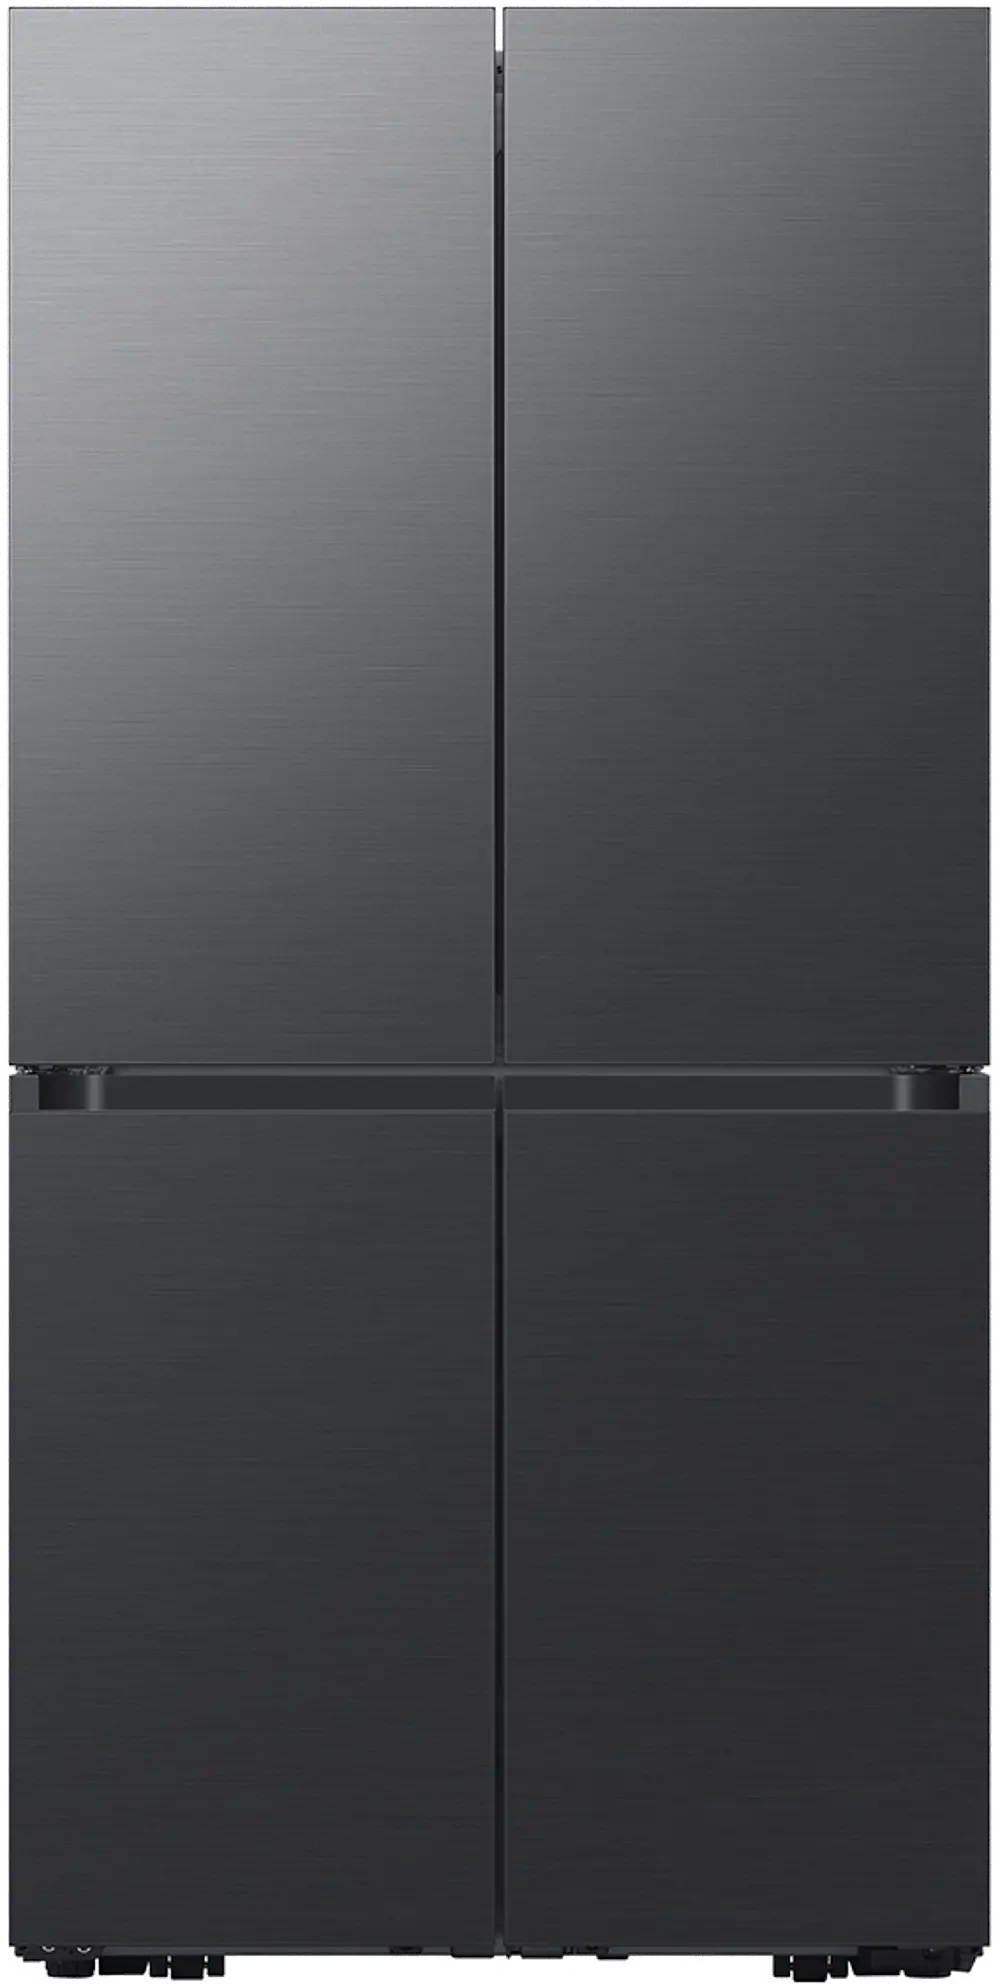 RF29A9675MT Samsung Bespoke 29 cu ft 4-Door Flex Refrigerator - Matte Black-1